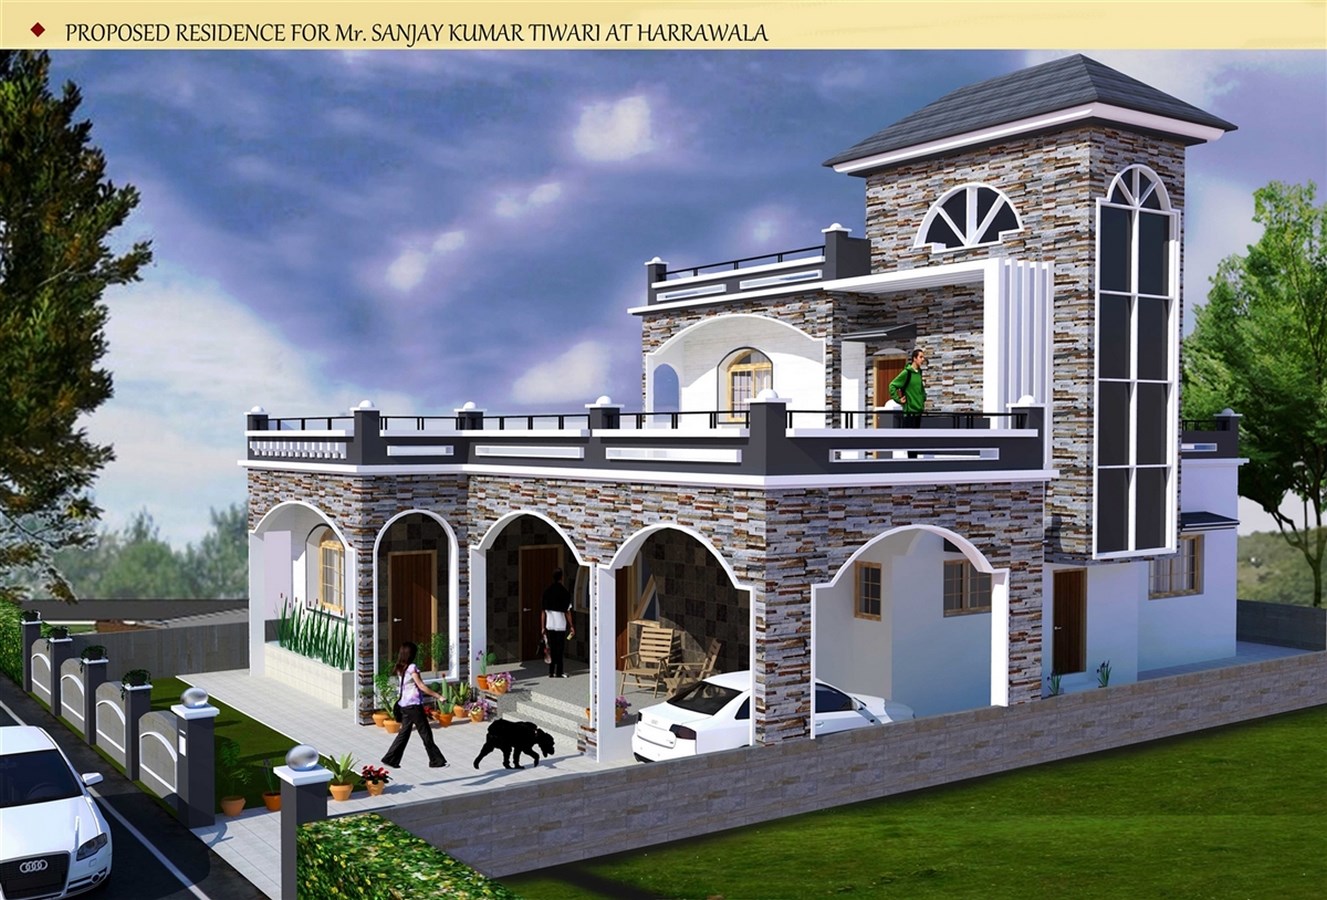 台拉都印度顶级架构项目-台拉都最佳架构师-Harrawala设计工作室